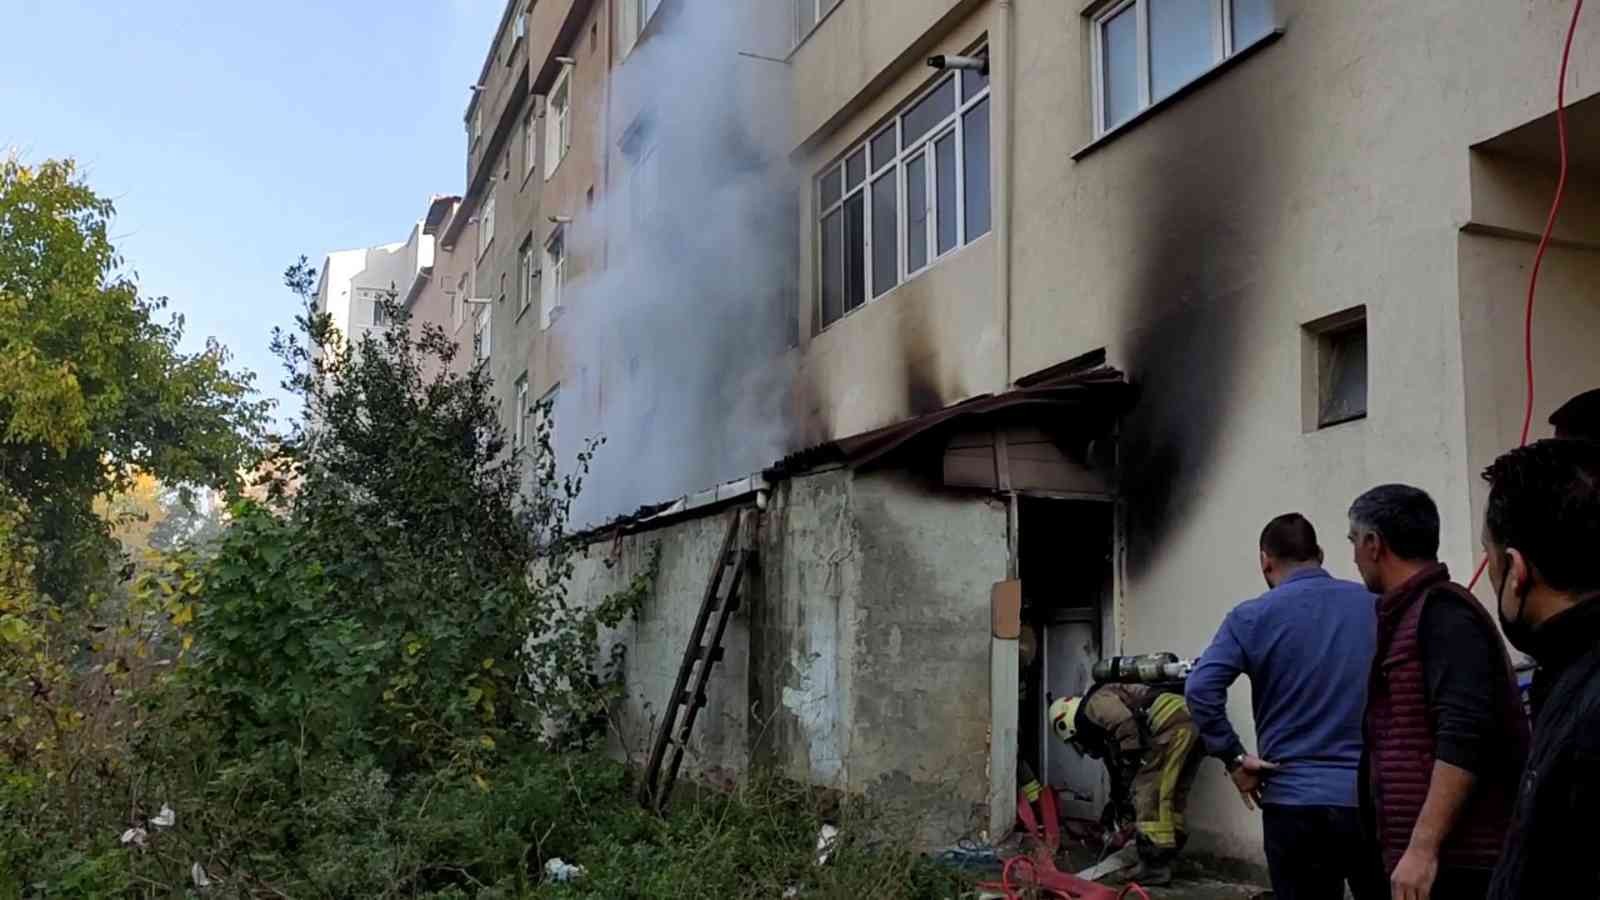 Sultangazi’de ayakkabı imalathanesinde yangın çıktı #istanbul